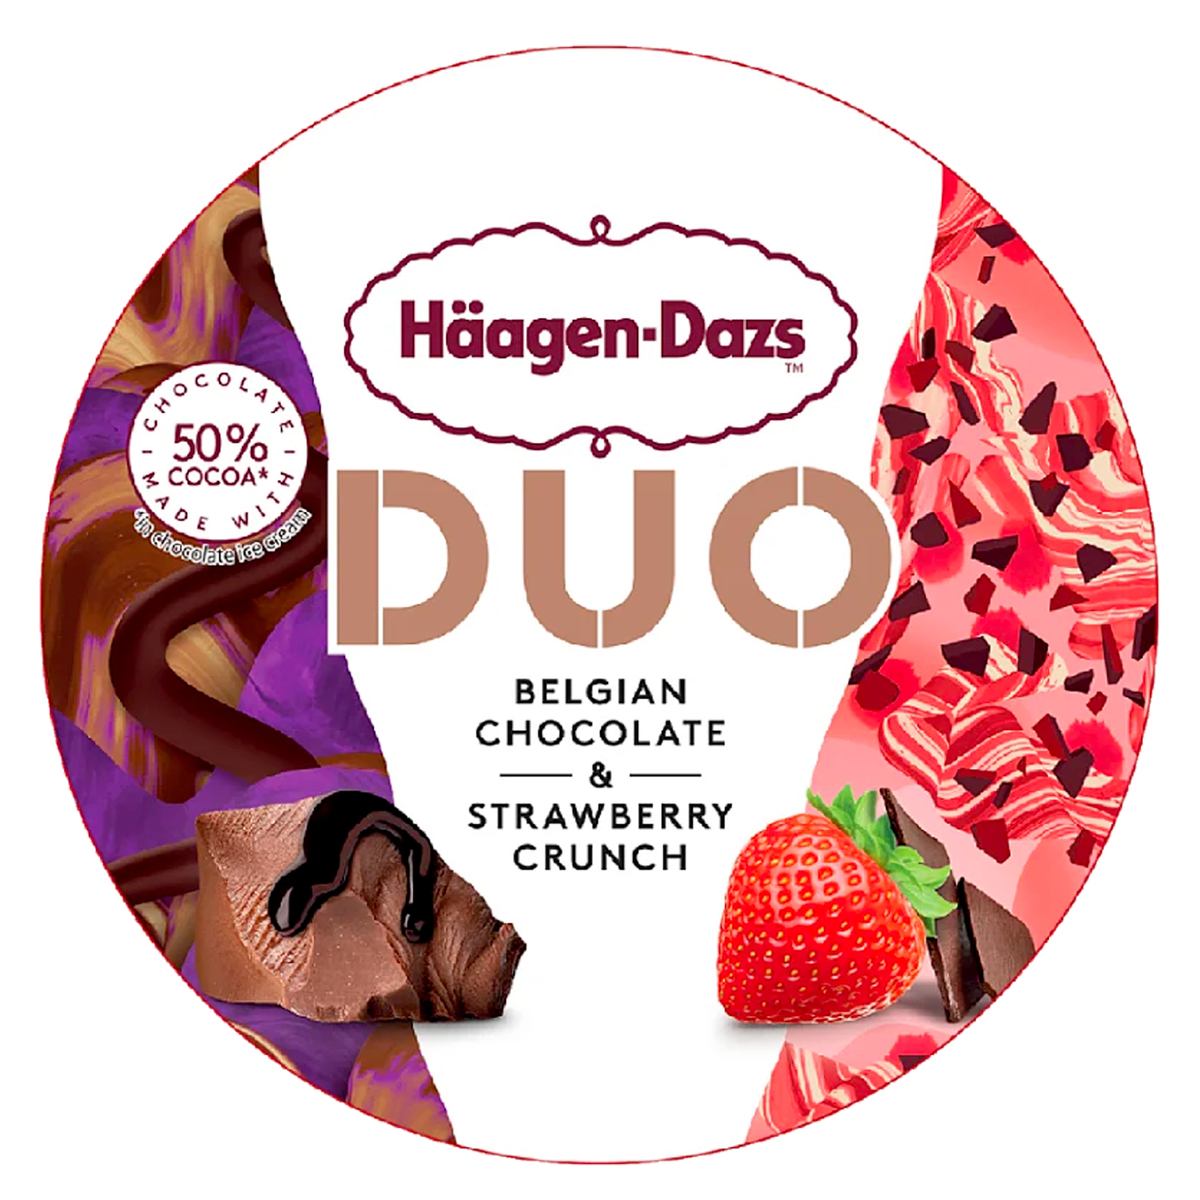 هاجن داز دو آيس كريم الشوكولاتة البلجيكية و الفراولة 420 مل